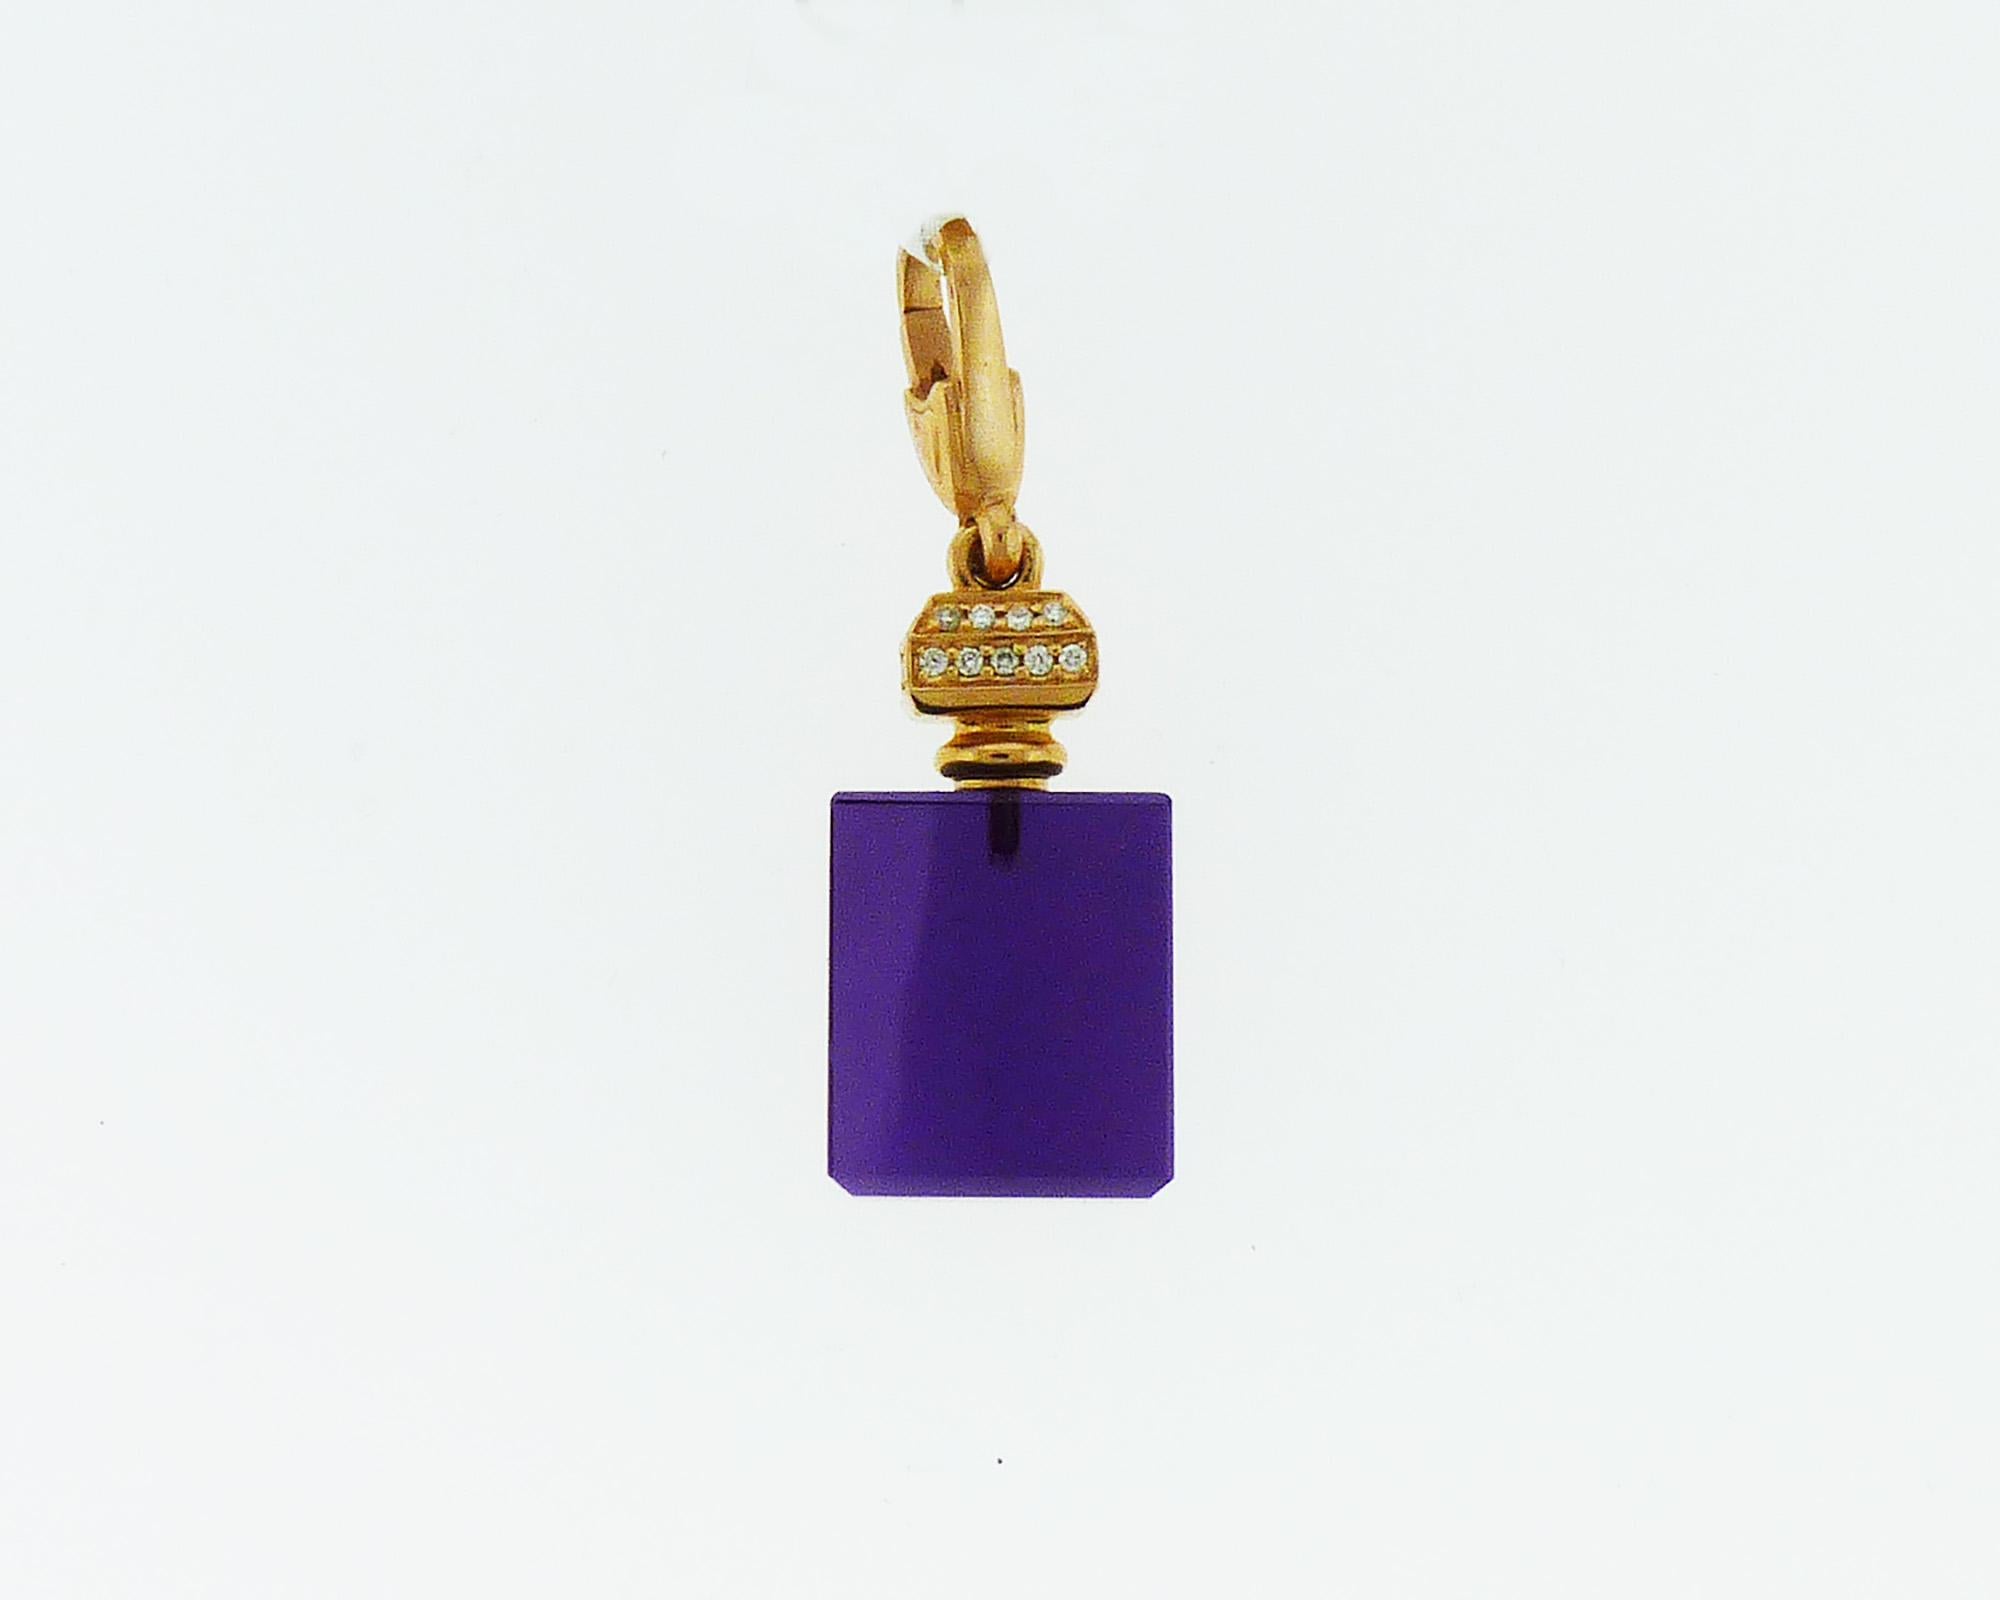 Ein Halskettenanhänger in Form eines Parfümflakons in verschiedenen Farben - lila, rosa, gelb und blau. Gefertigt aus Quarz, 18 Karat Gelb-, Rosé- oder Weißgold und mit weißen Diamanten verziert.
Das Kabel ist NICHT enthalten.
Die Anhänger sind